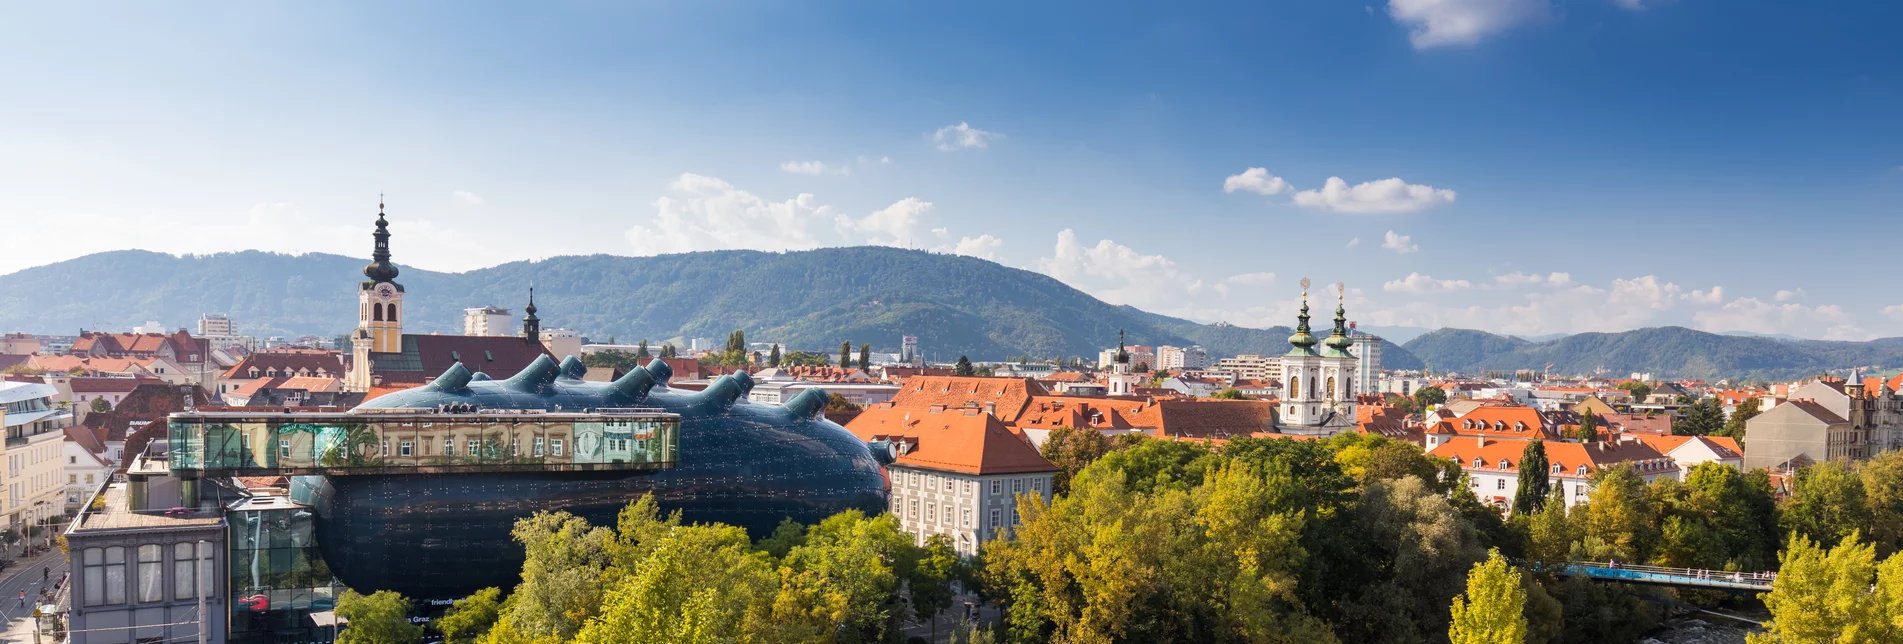 City of Graz | © Graz Tourism | Harry Schiffer